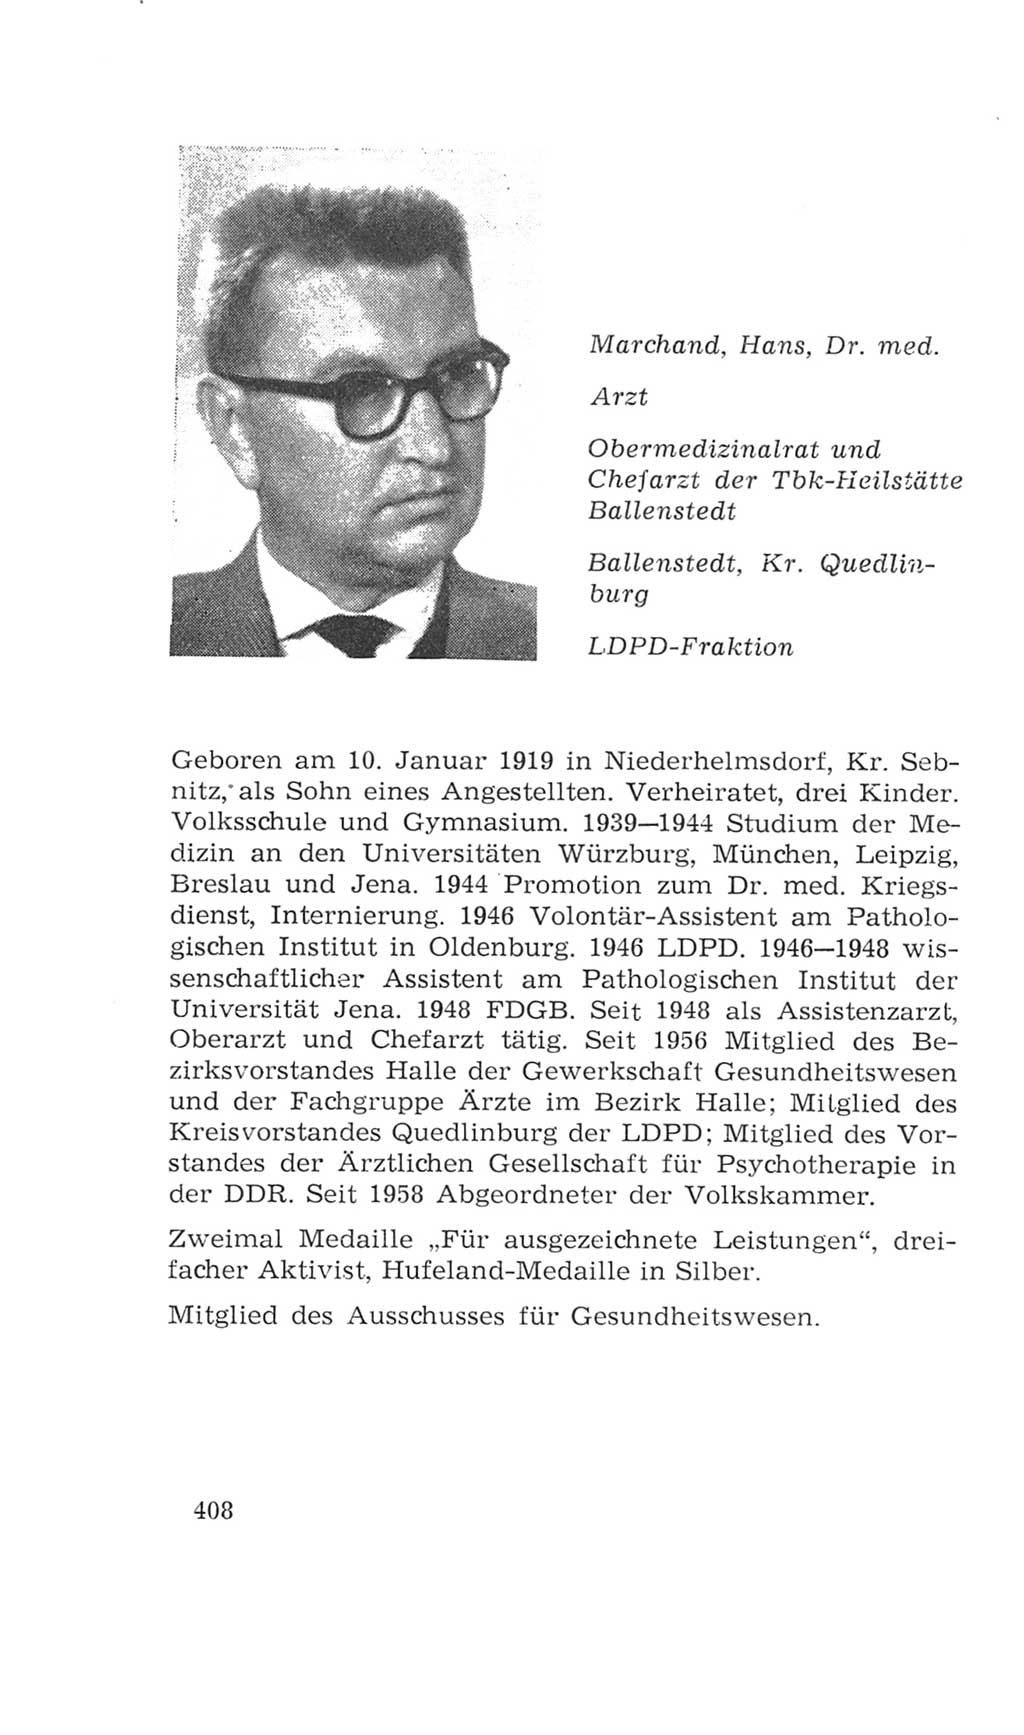 Volkskammer (VK) der Deutschen Demokratischen Republik (DDR), 4. Wahlperiode 1963-1967, Seite 408 (VK. DDR 4. WP. 1963-1967, S. 408)